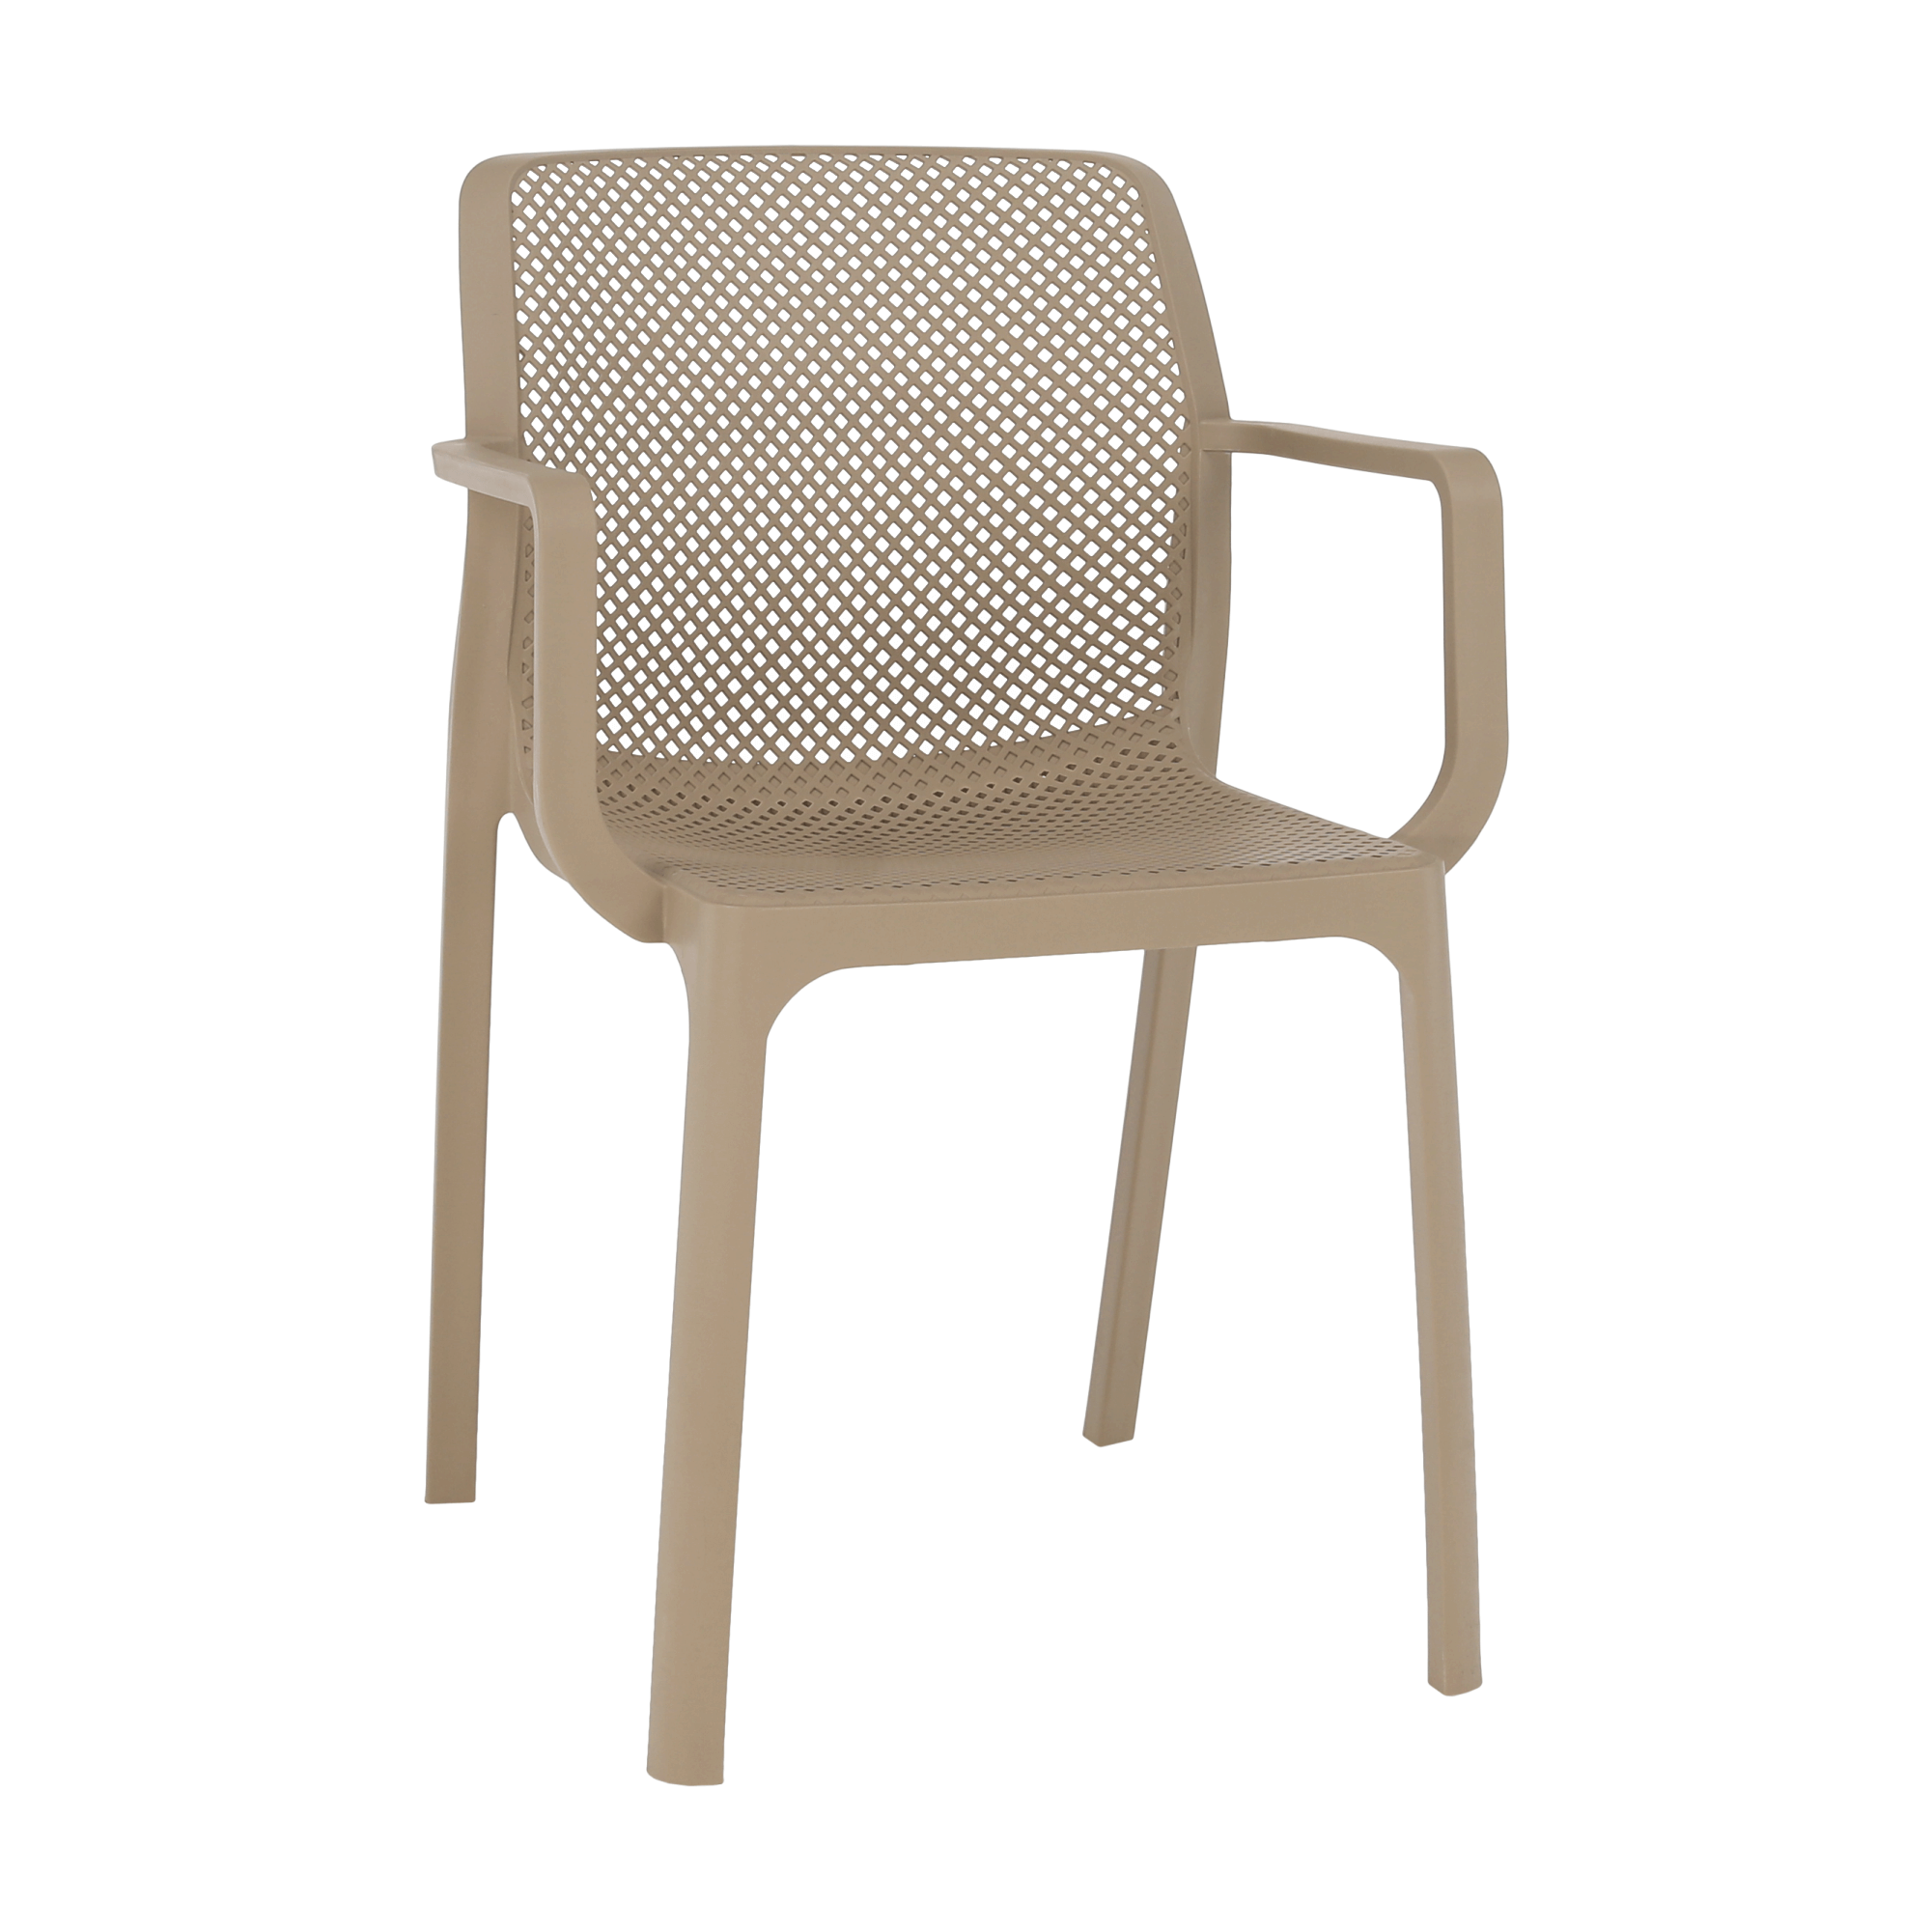 Rakásolható szék, szürkésbarna taupe/műanyag, FRENIA